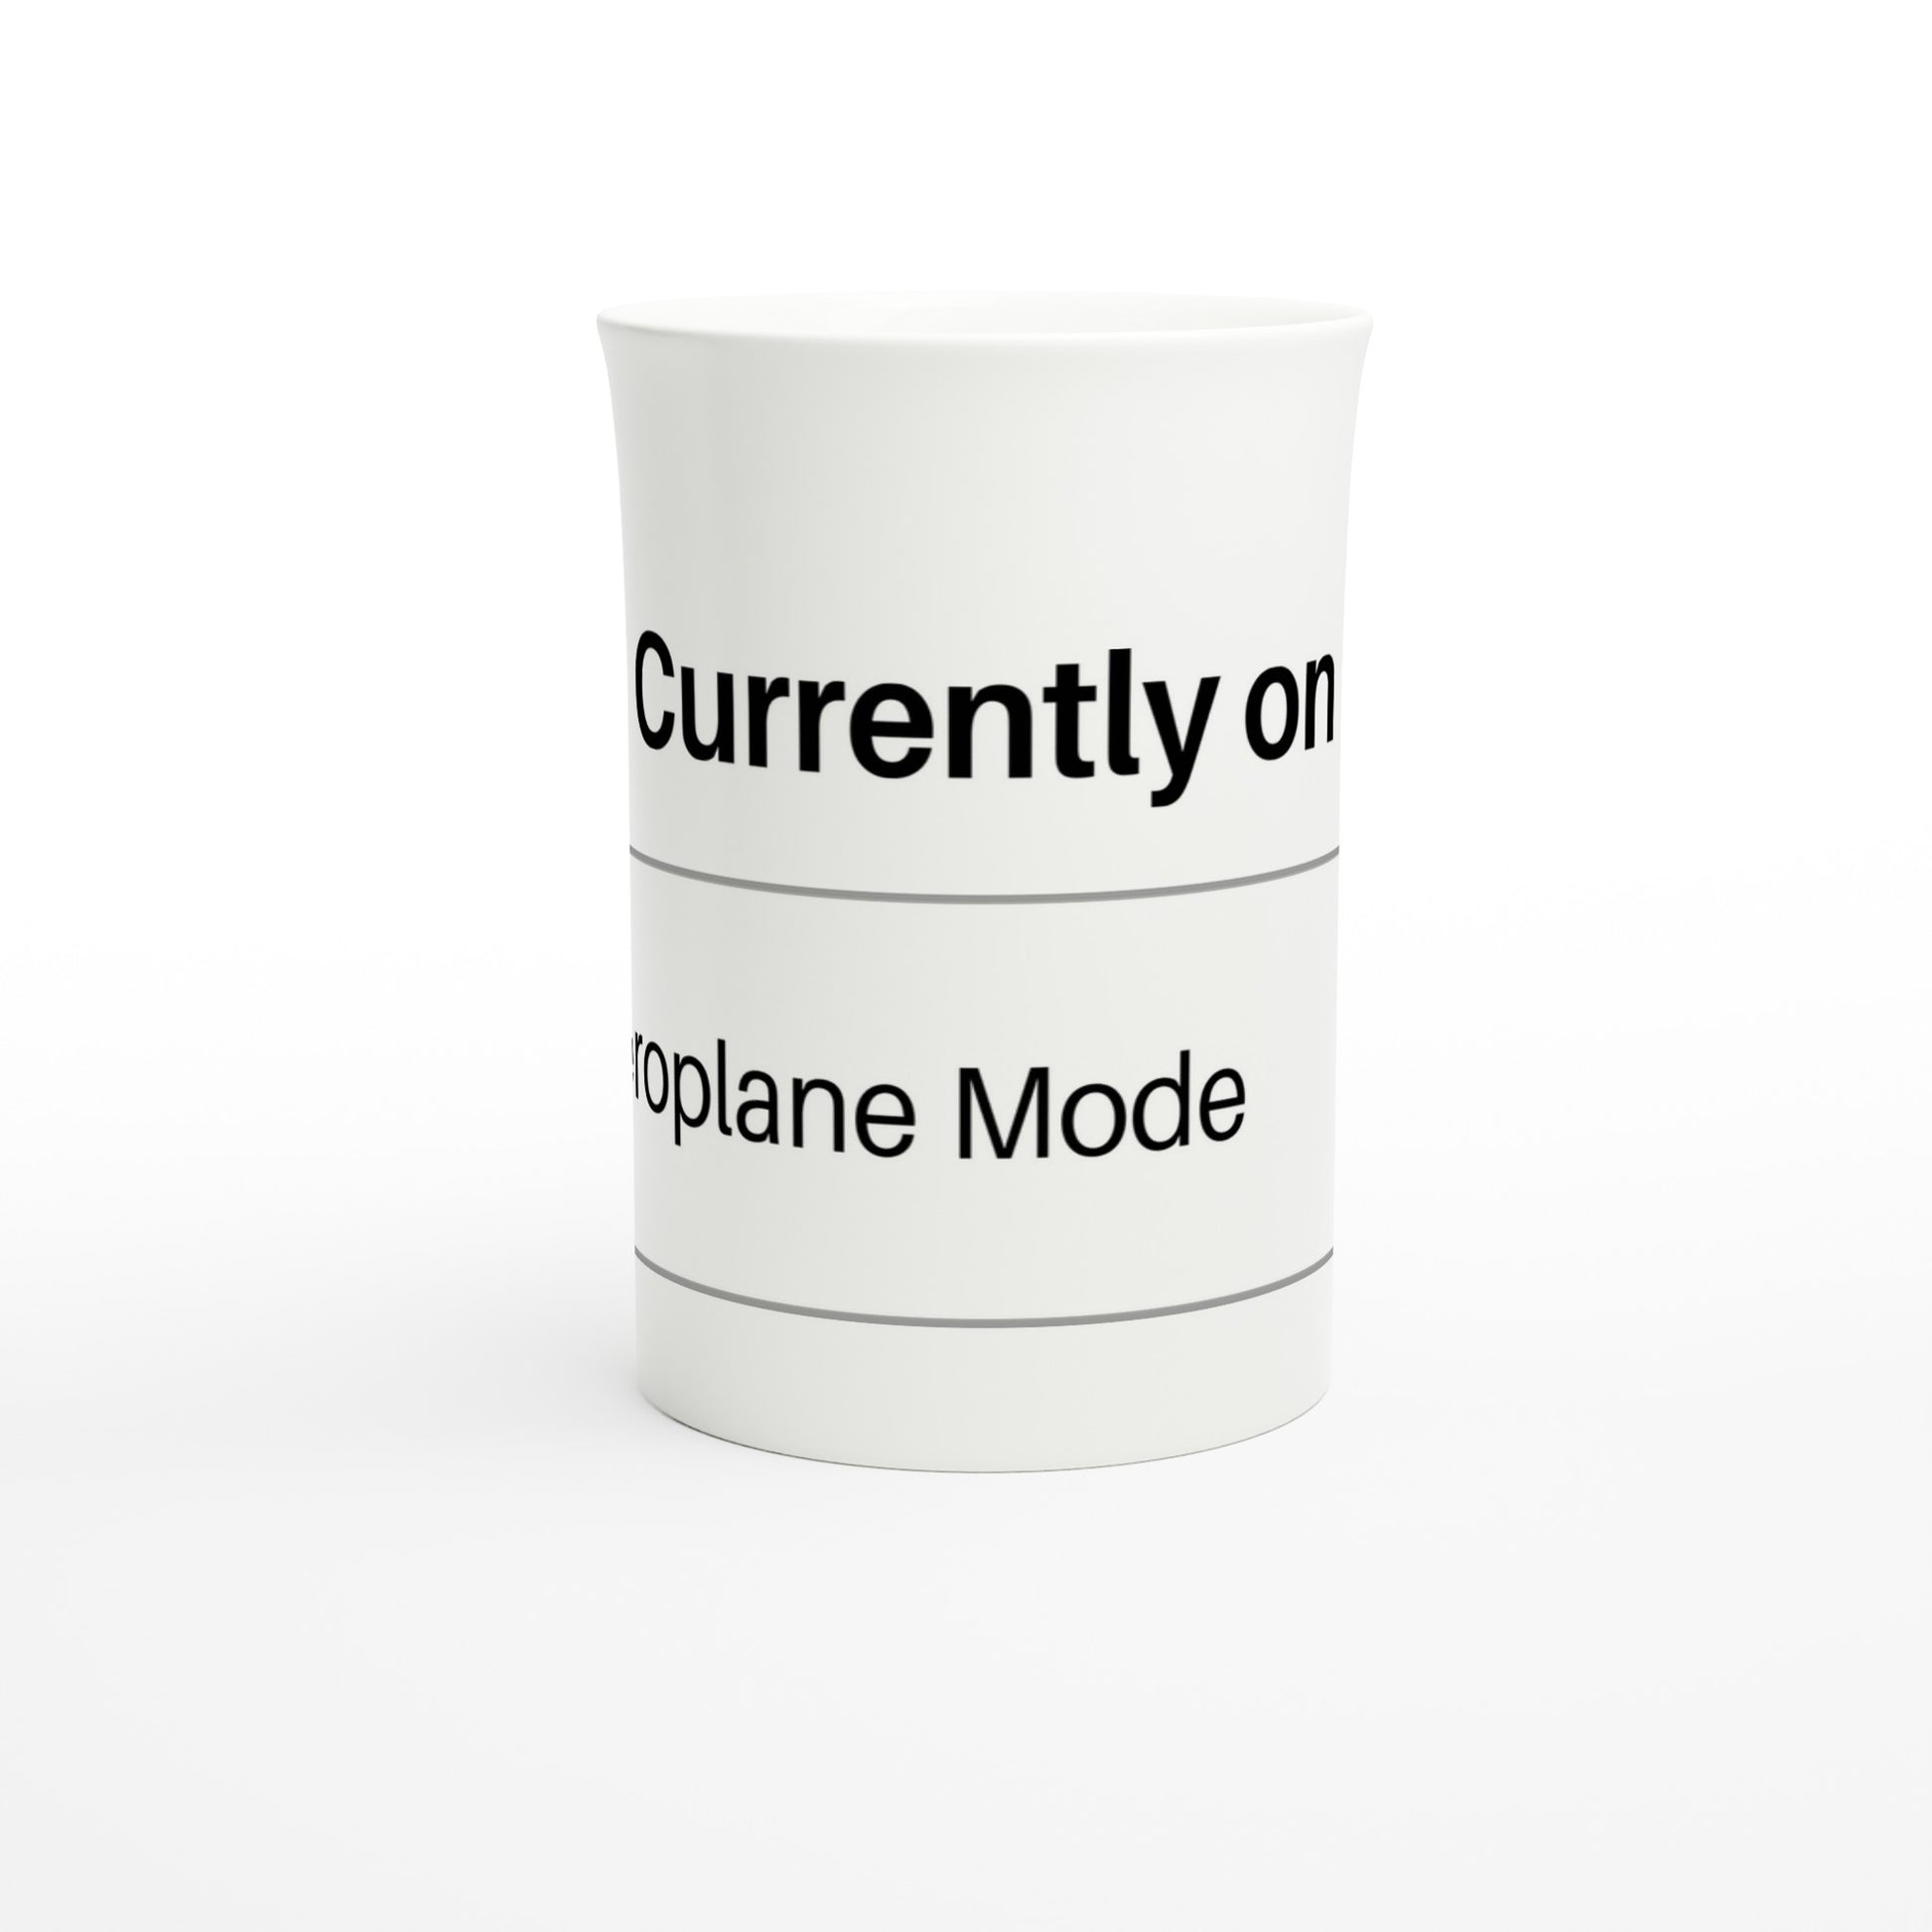 Currently On Aeroplane Mode - White 10oz Porcelain Slim Mug Porcelain Mug